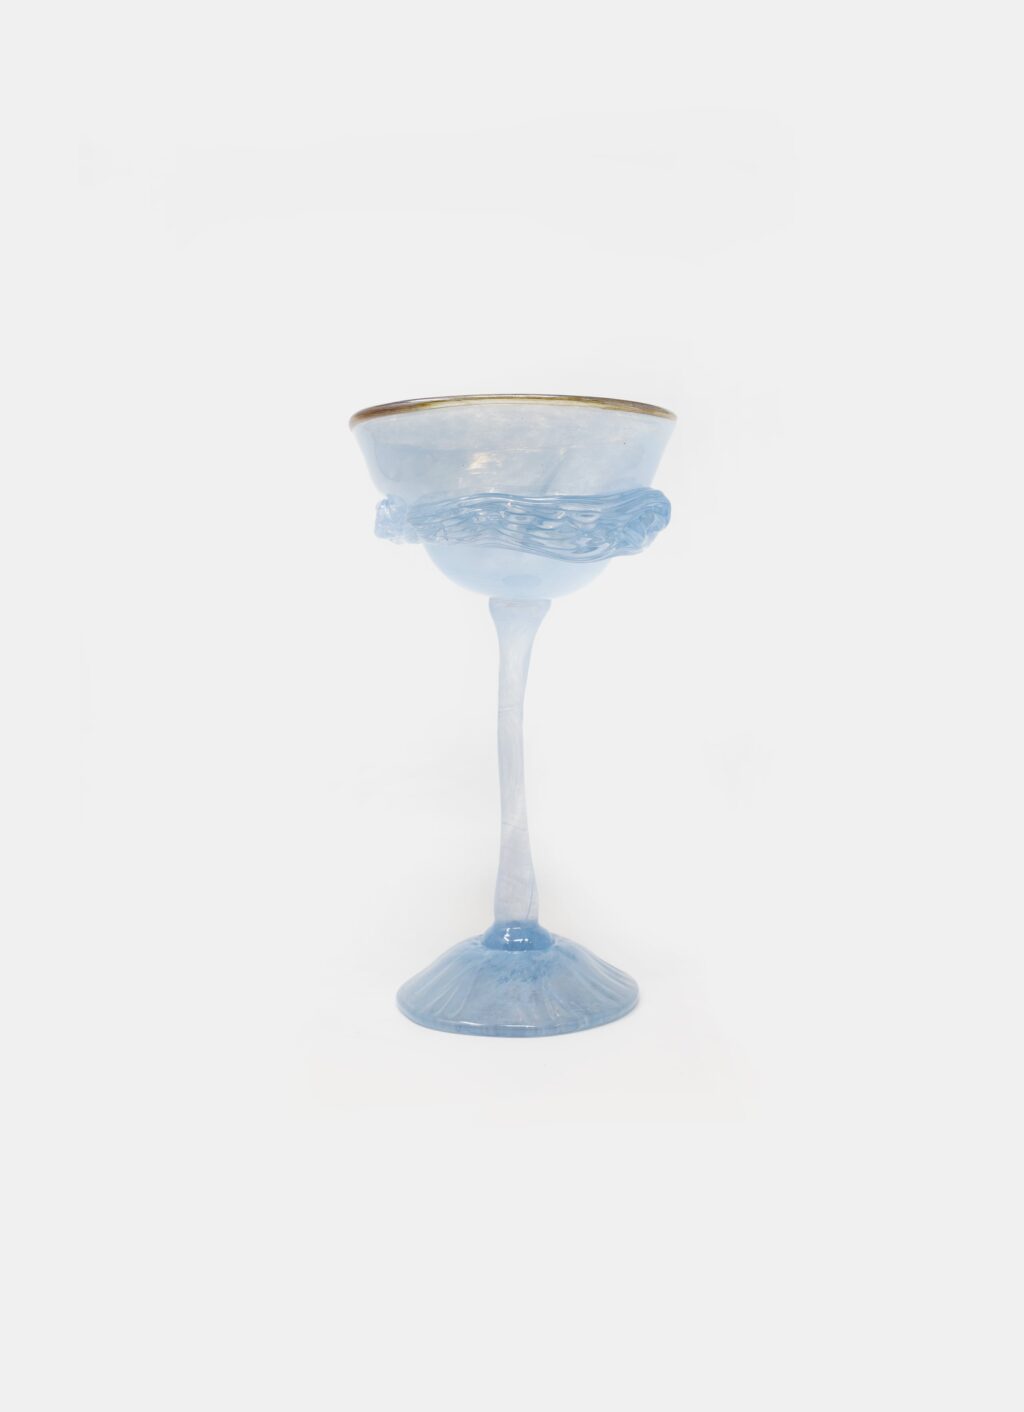 Gunilla Kihlgren - Handblown glass - Champagne glass - light blue with gold rim